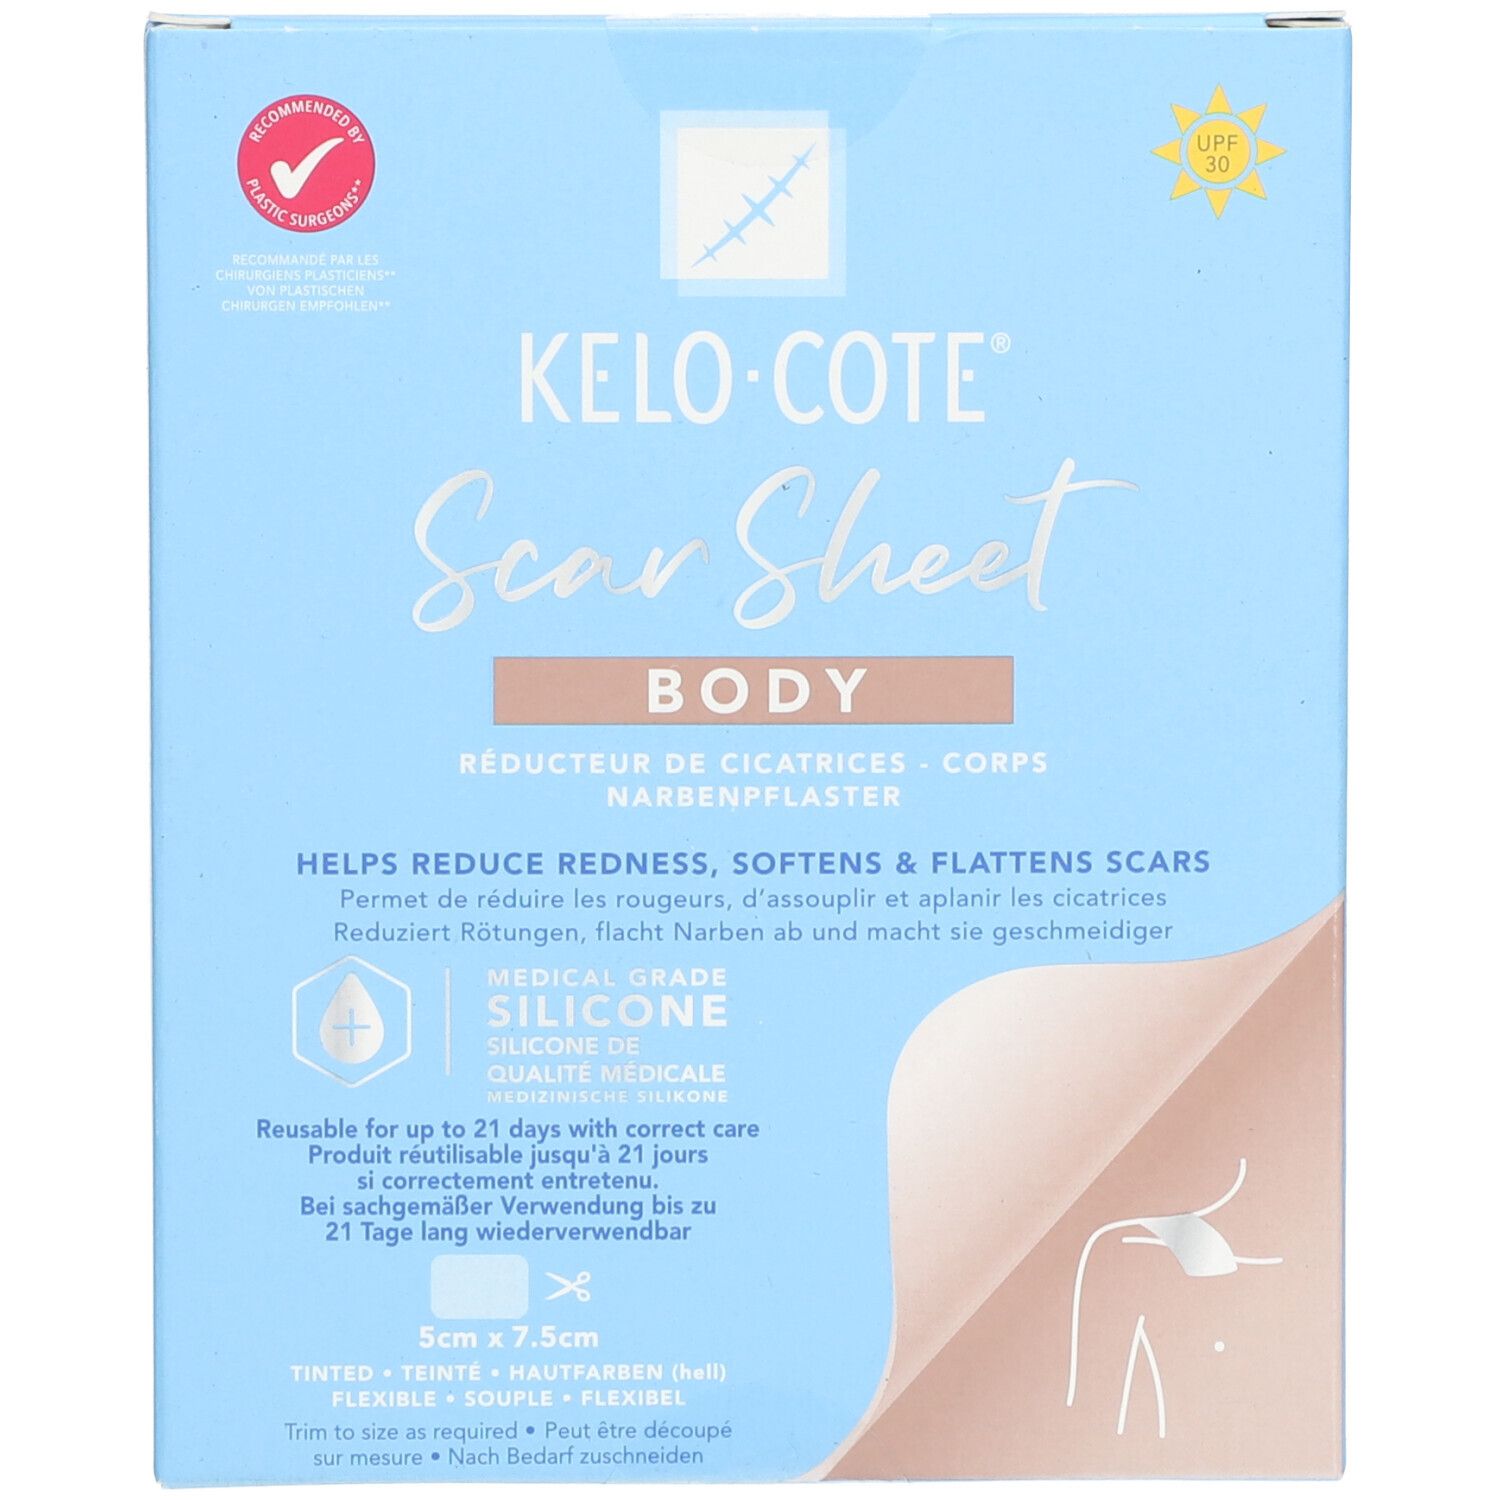 Kelo-Cote® Scar Sheet Body